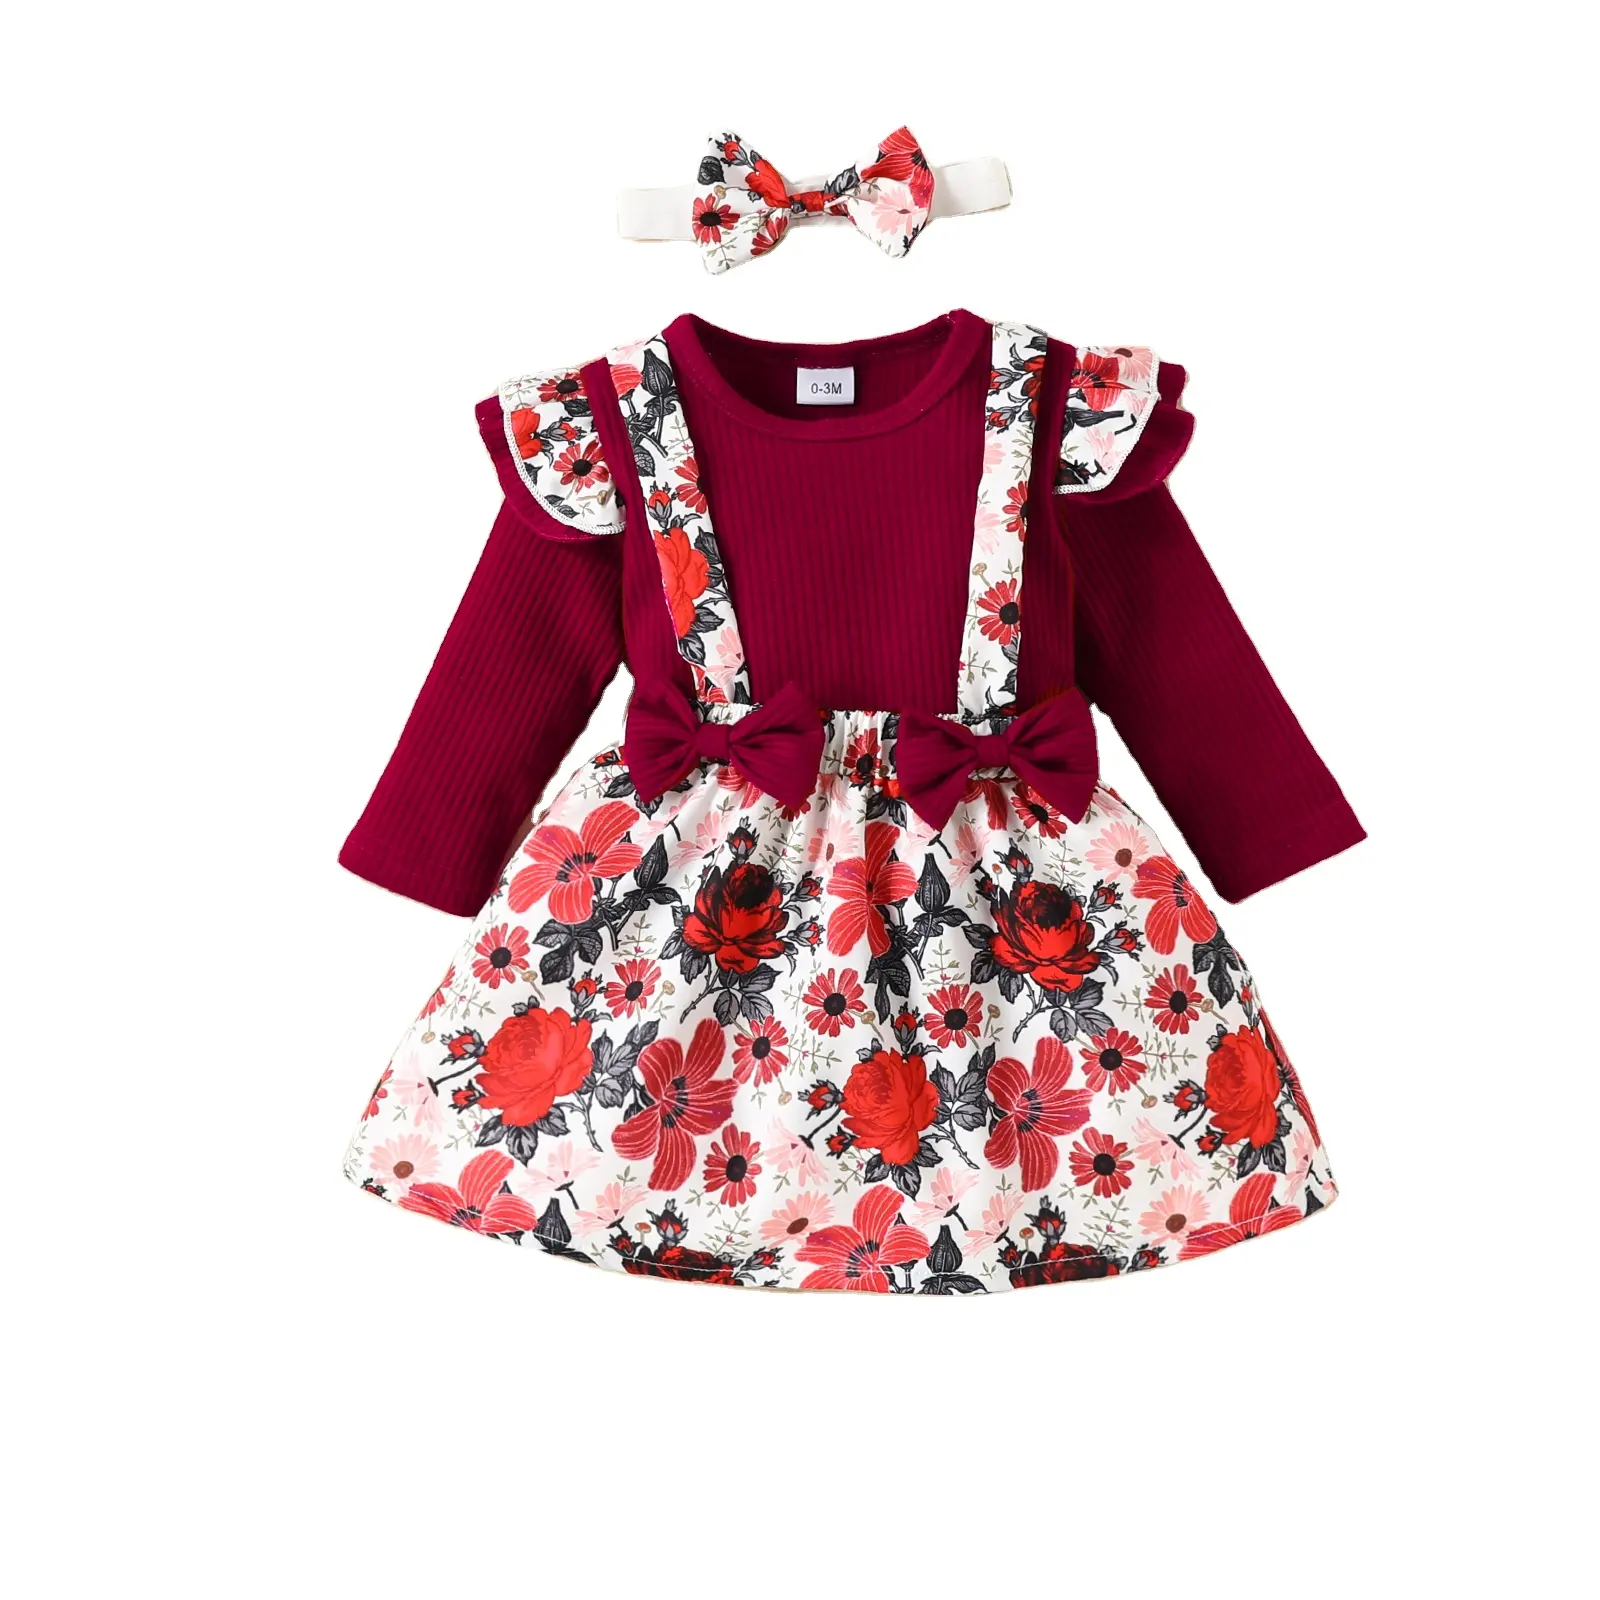 बेबी गर्ल्स कपड़े नवजात रफ़ल लंबी आस्तीन टॉप 3 पीस आउटफिट फ्लोरल प्रिंट सस्पेंडर स्कर्ट कपड़े का सेट